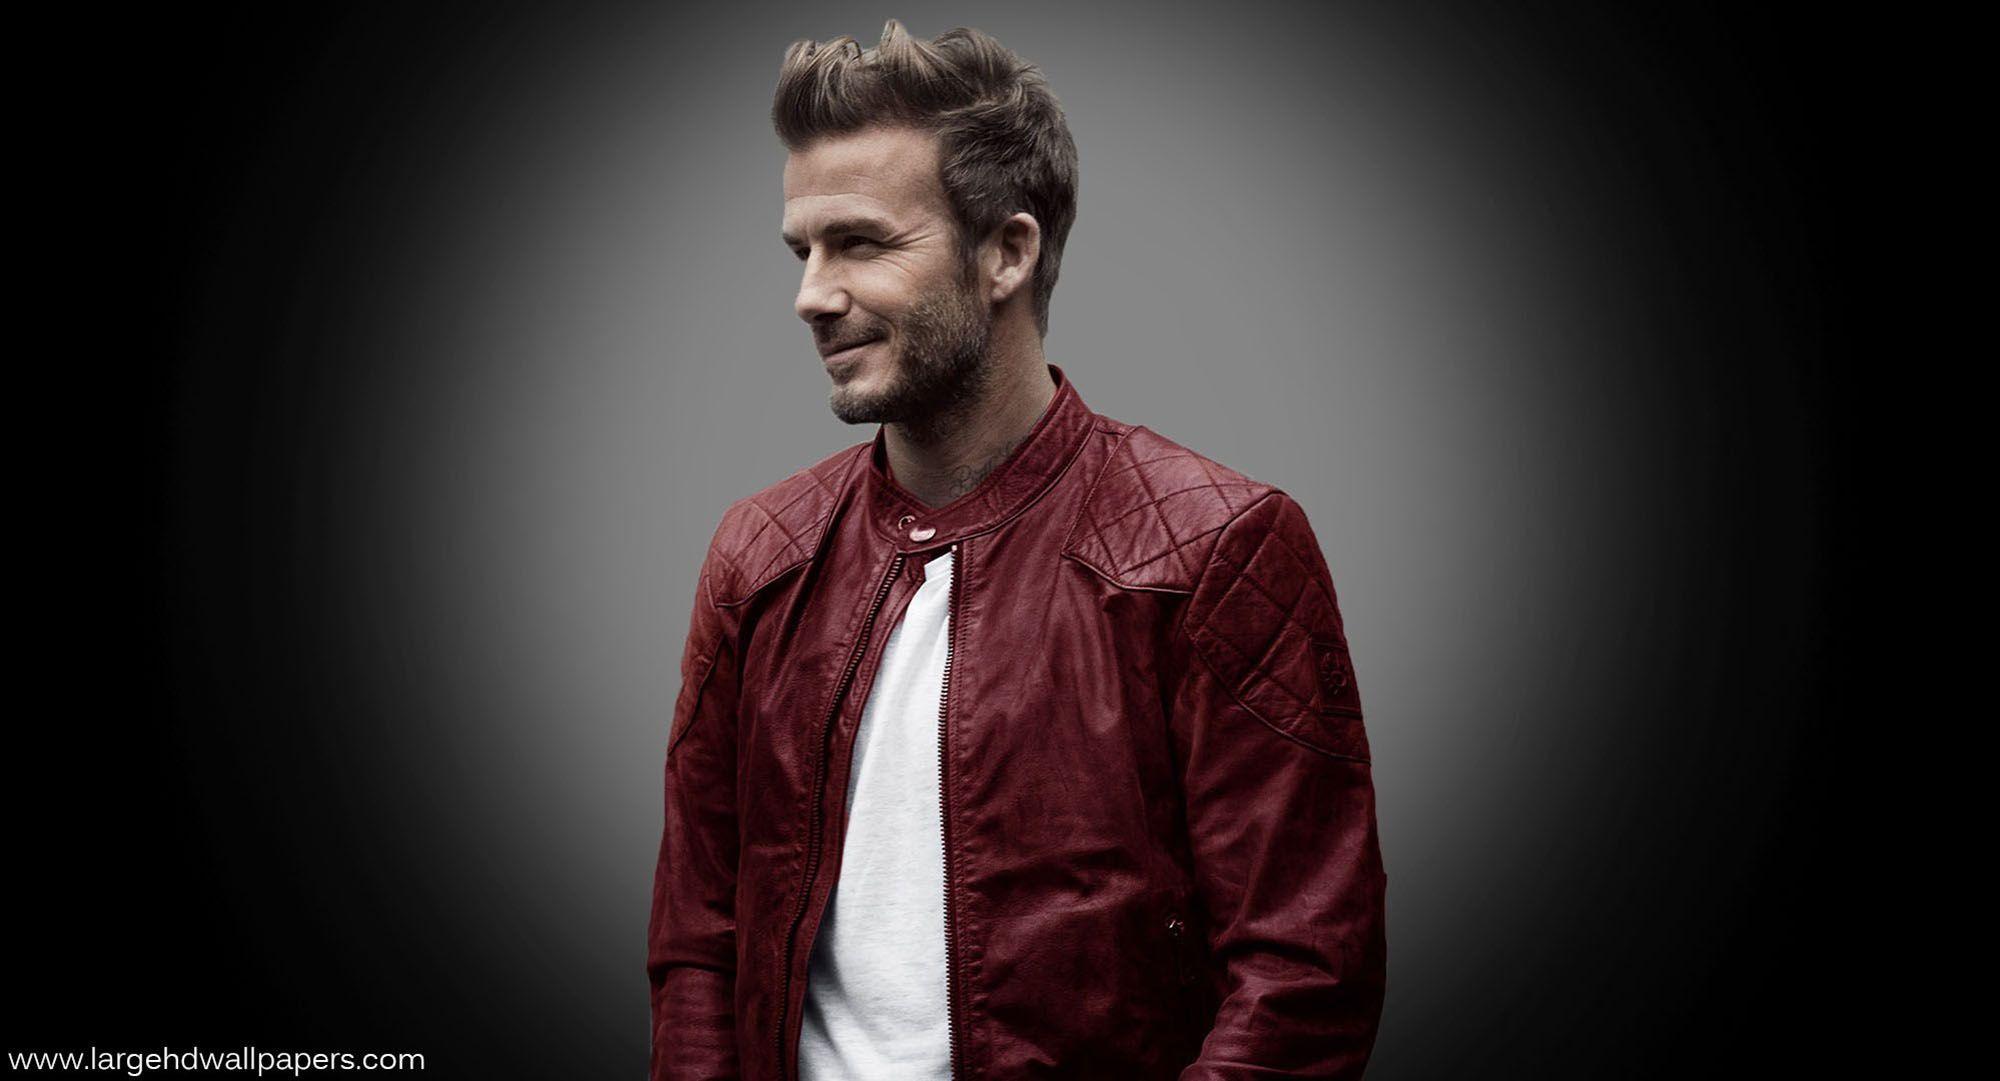 Widescreen David Beckham World Popular Football Player Hd Large On